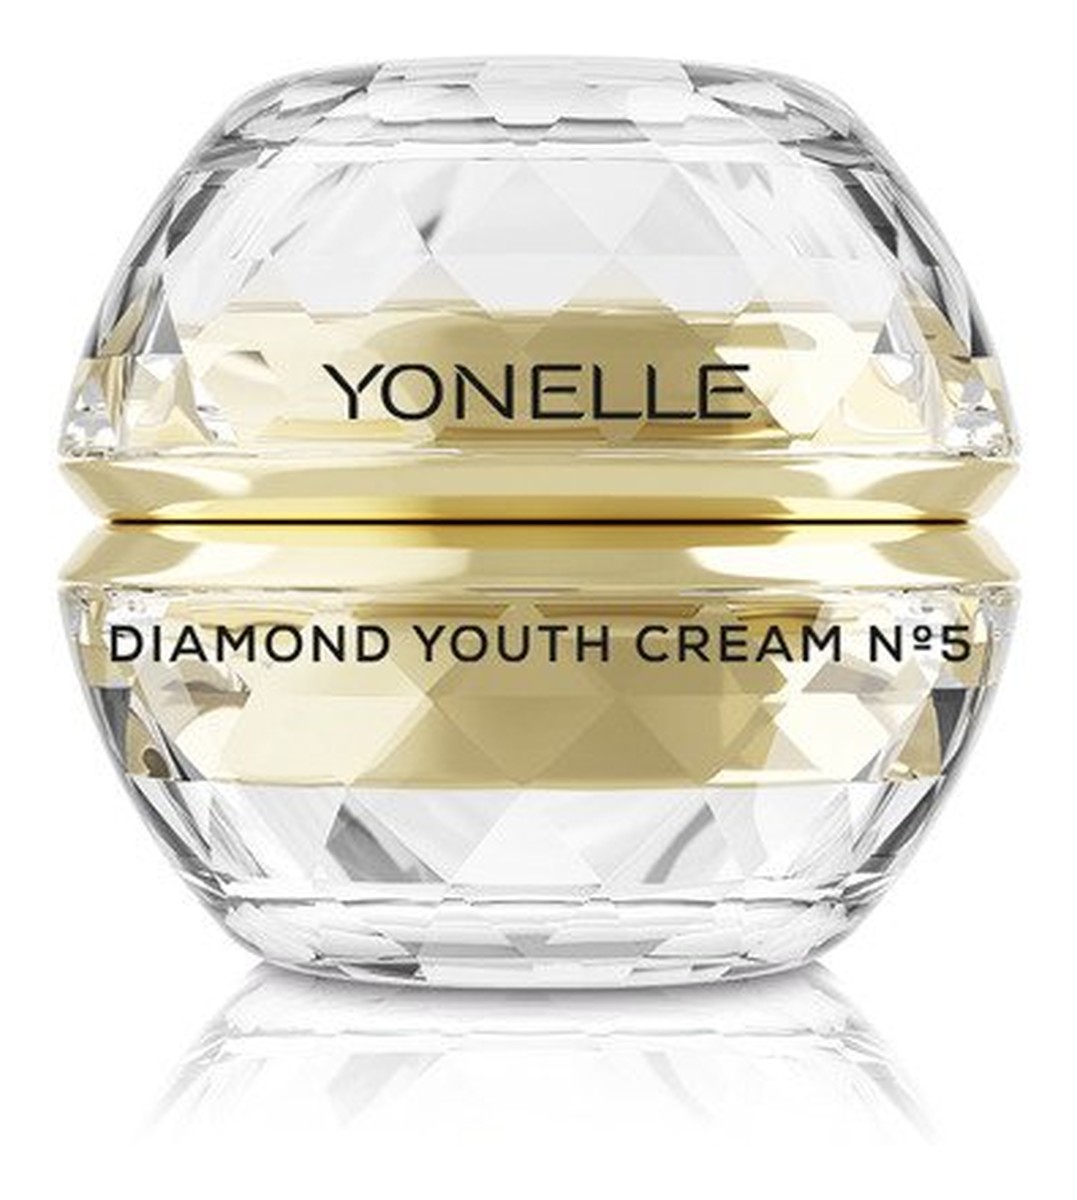 Youth Cream N5 diamentowy krem młodości do twarzy i ust